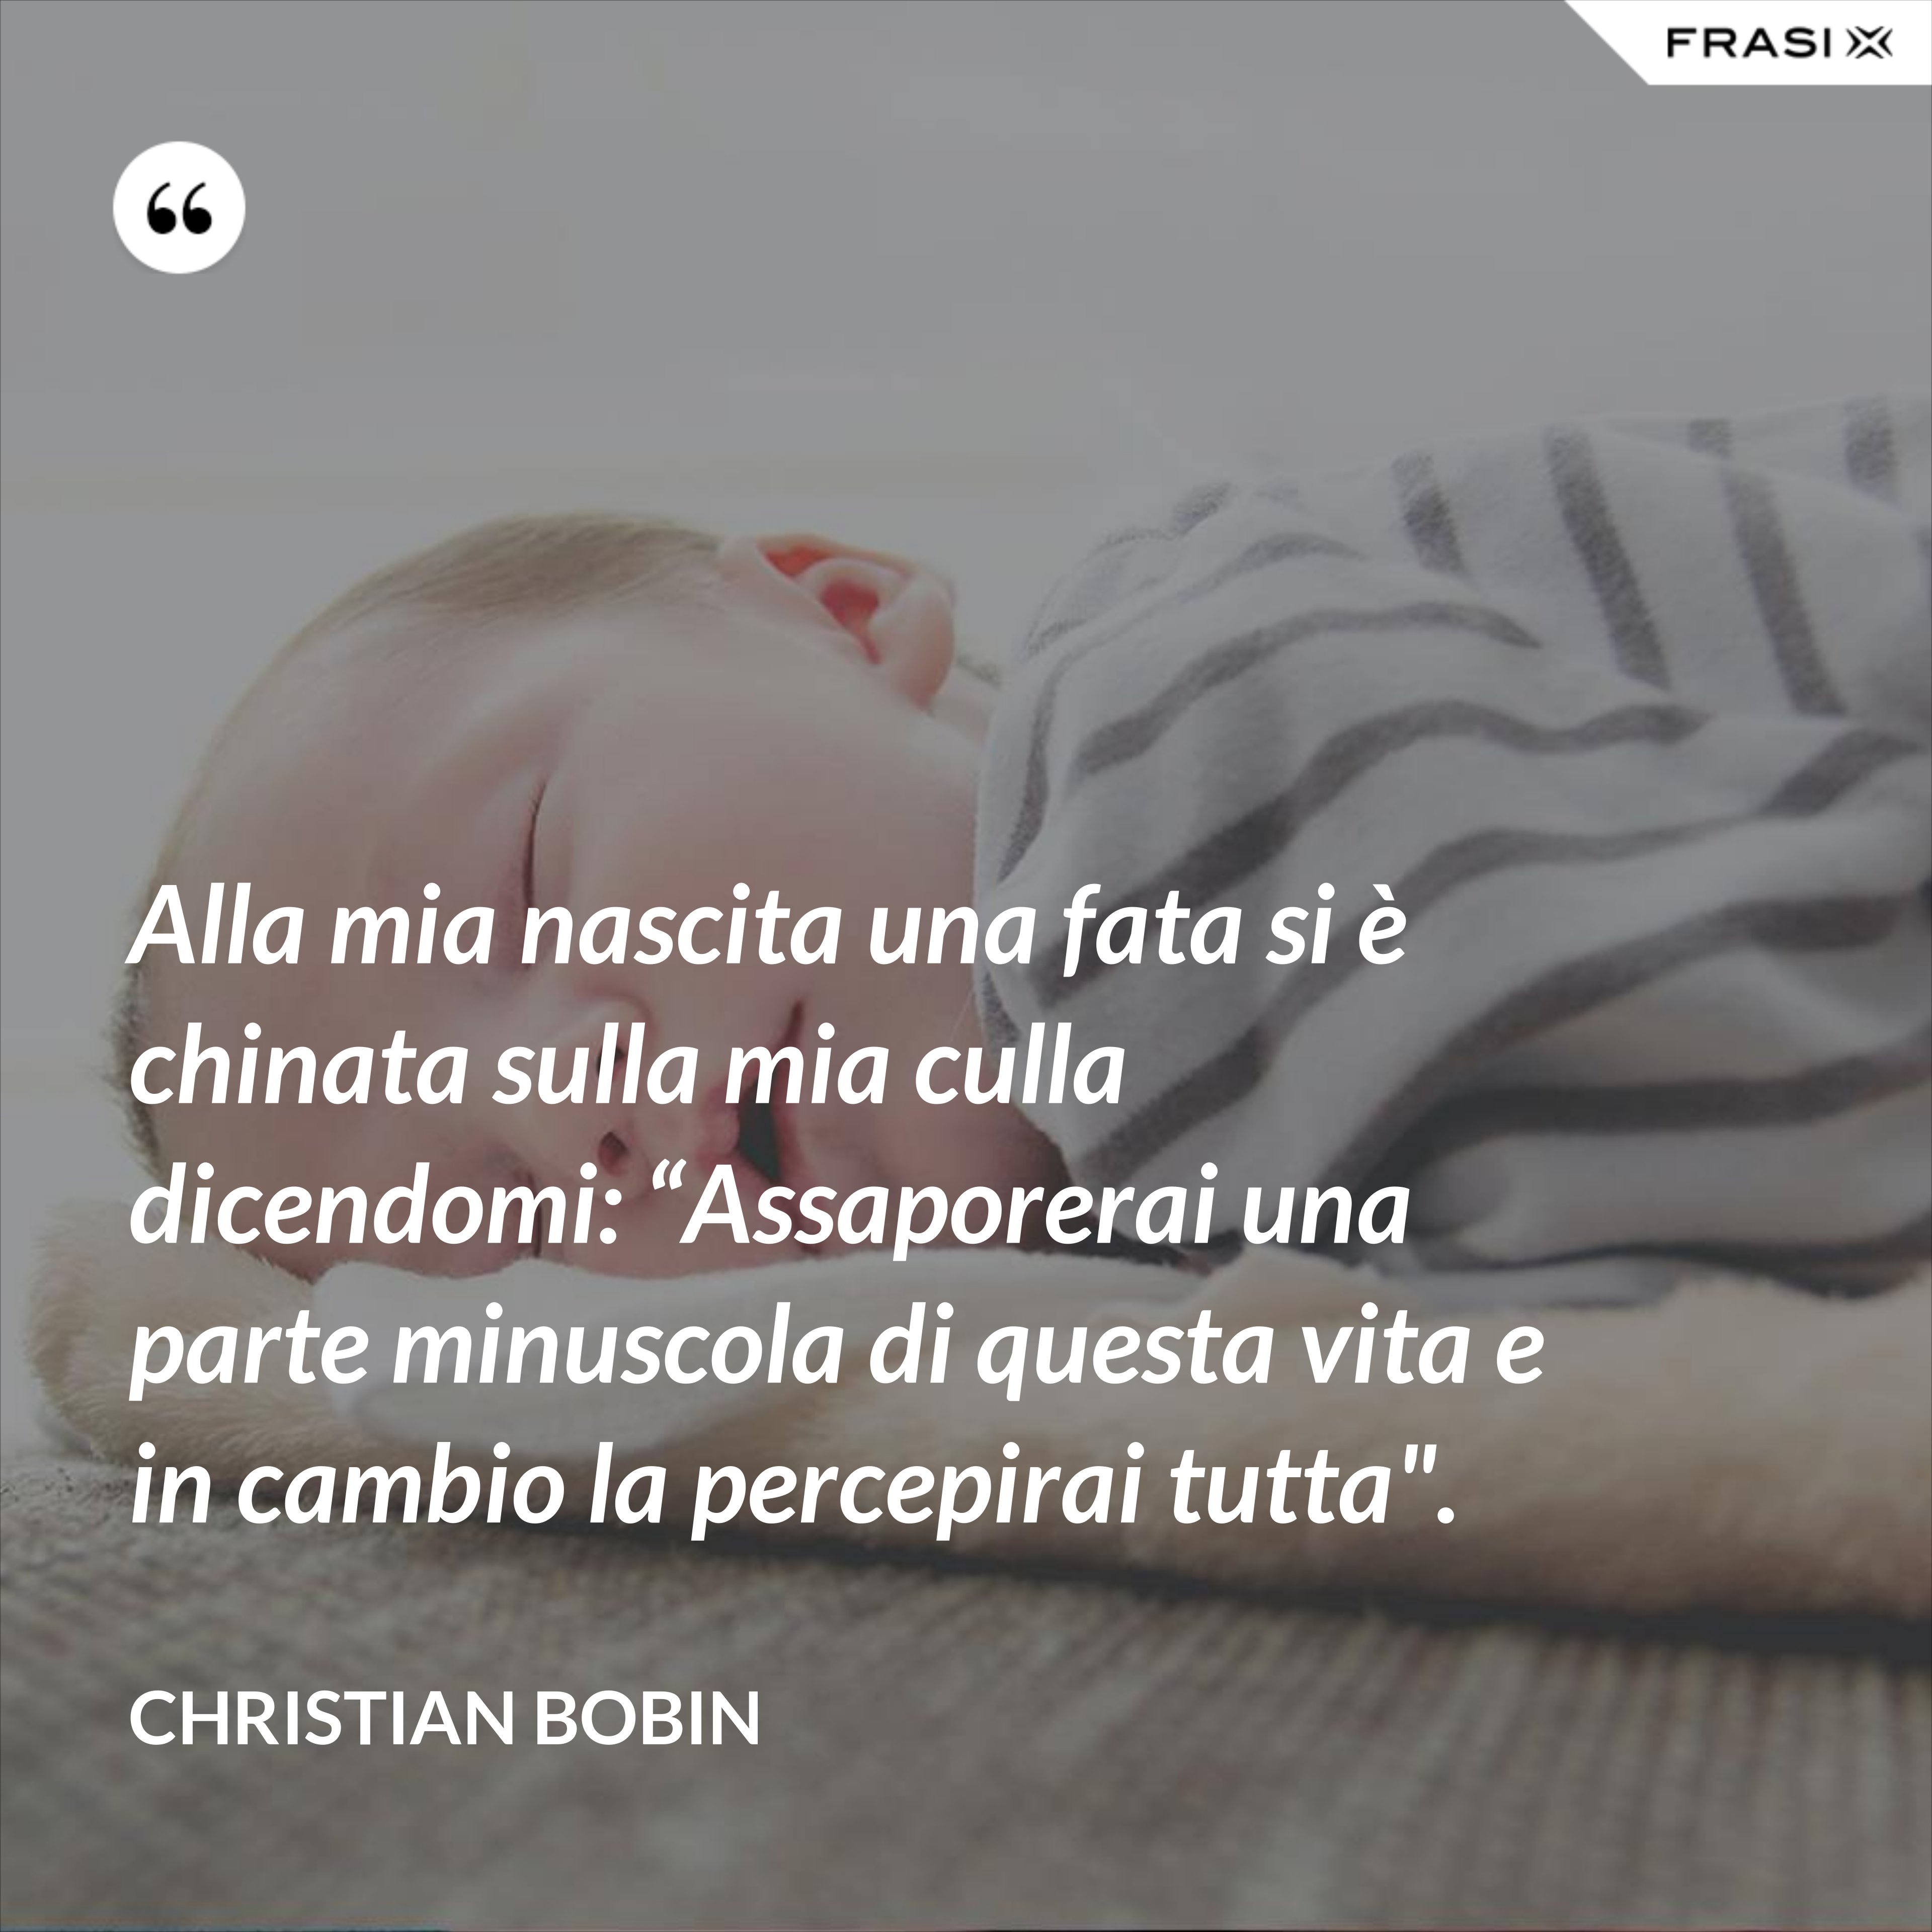 Alla mia nascita una fata si è chinata sulla mia culla dicendomi: “Assaporerai una parte minuscola di questa vita e in cambio la percepirai tutta". - Christian Bobin